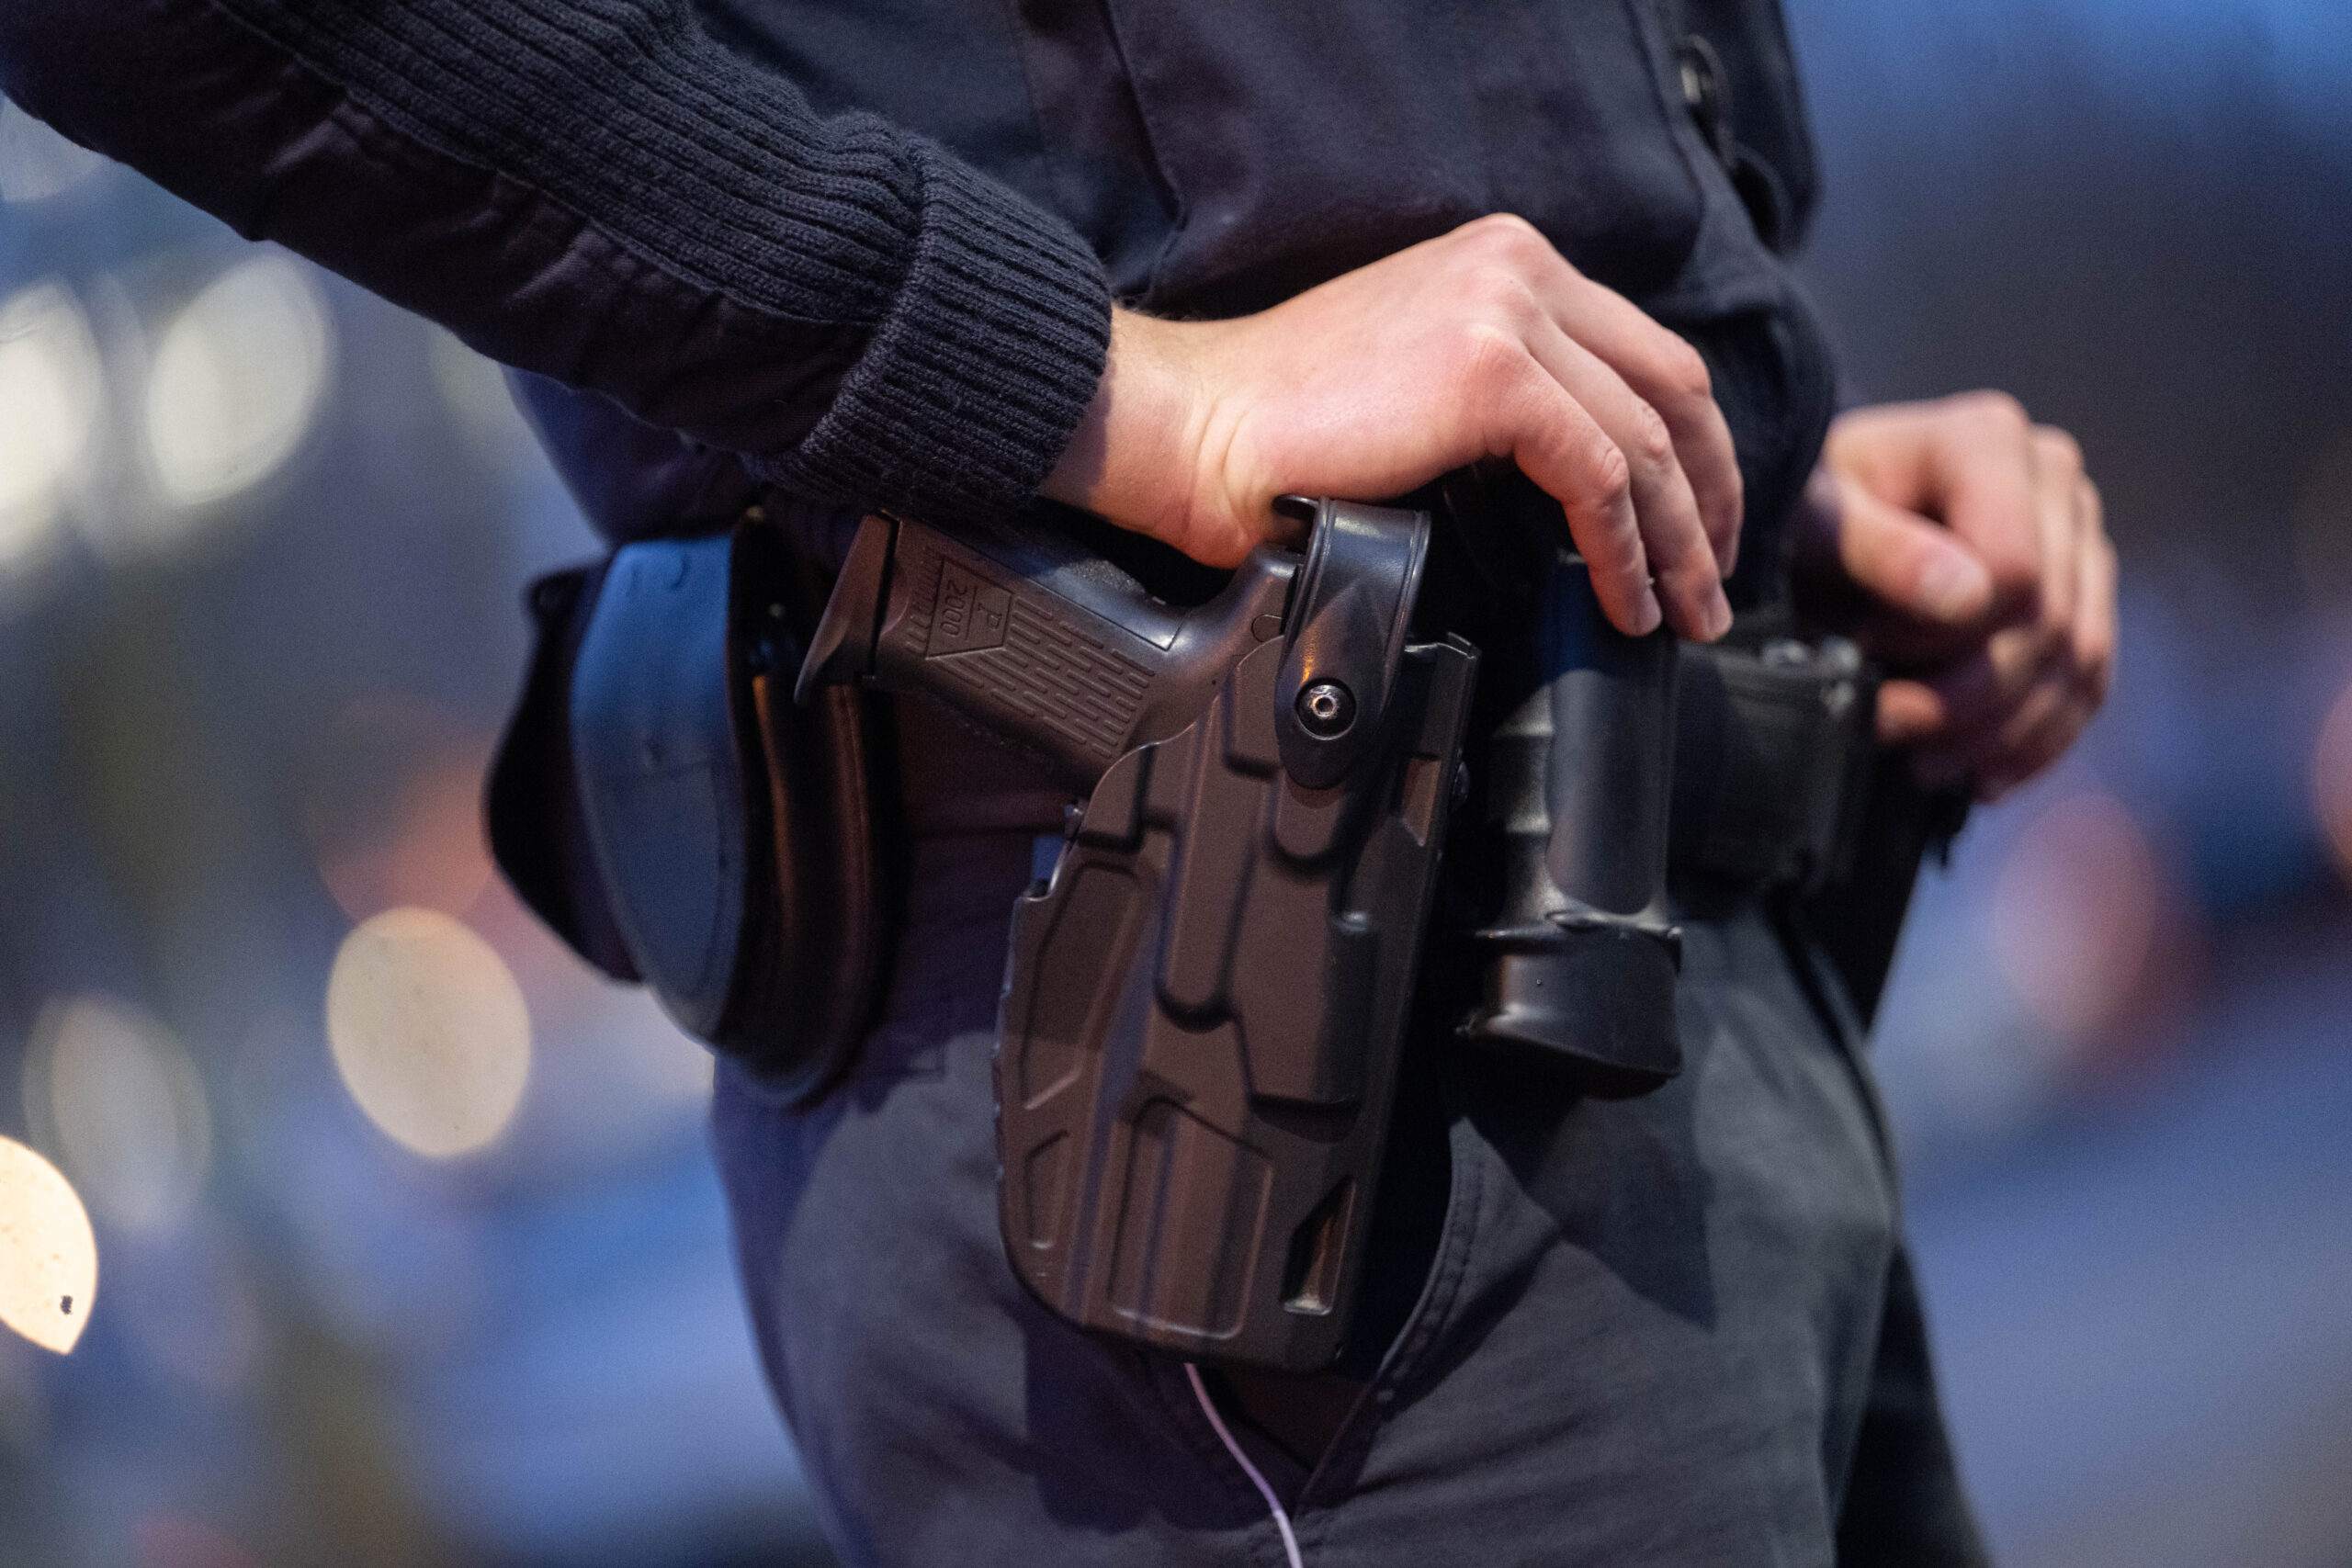 Imbiss-angestellter mit Waffe bedroht – Polizei stoppt flüchtige Täter mit einem Schuss in den Reifen des Fluchtauto